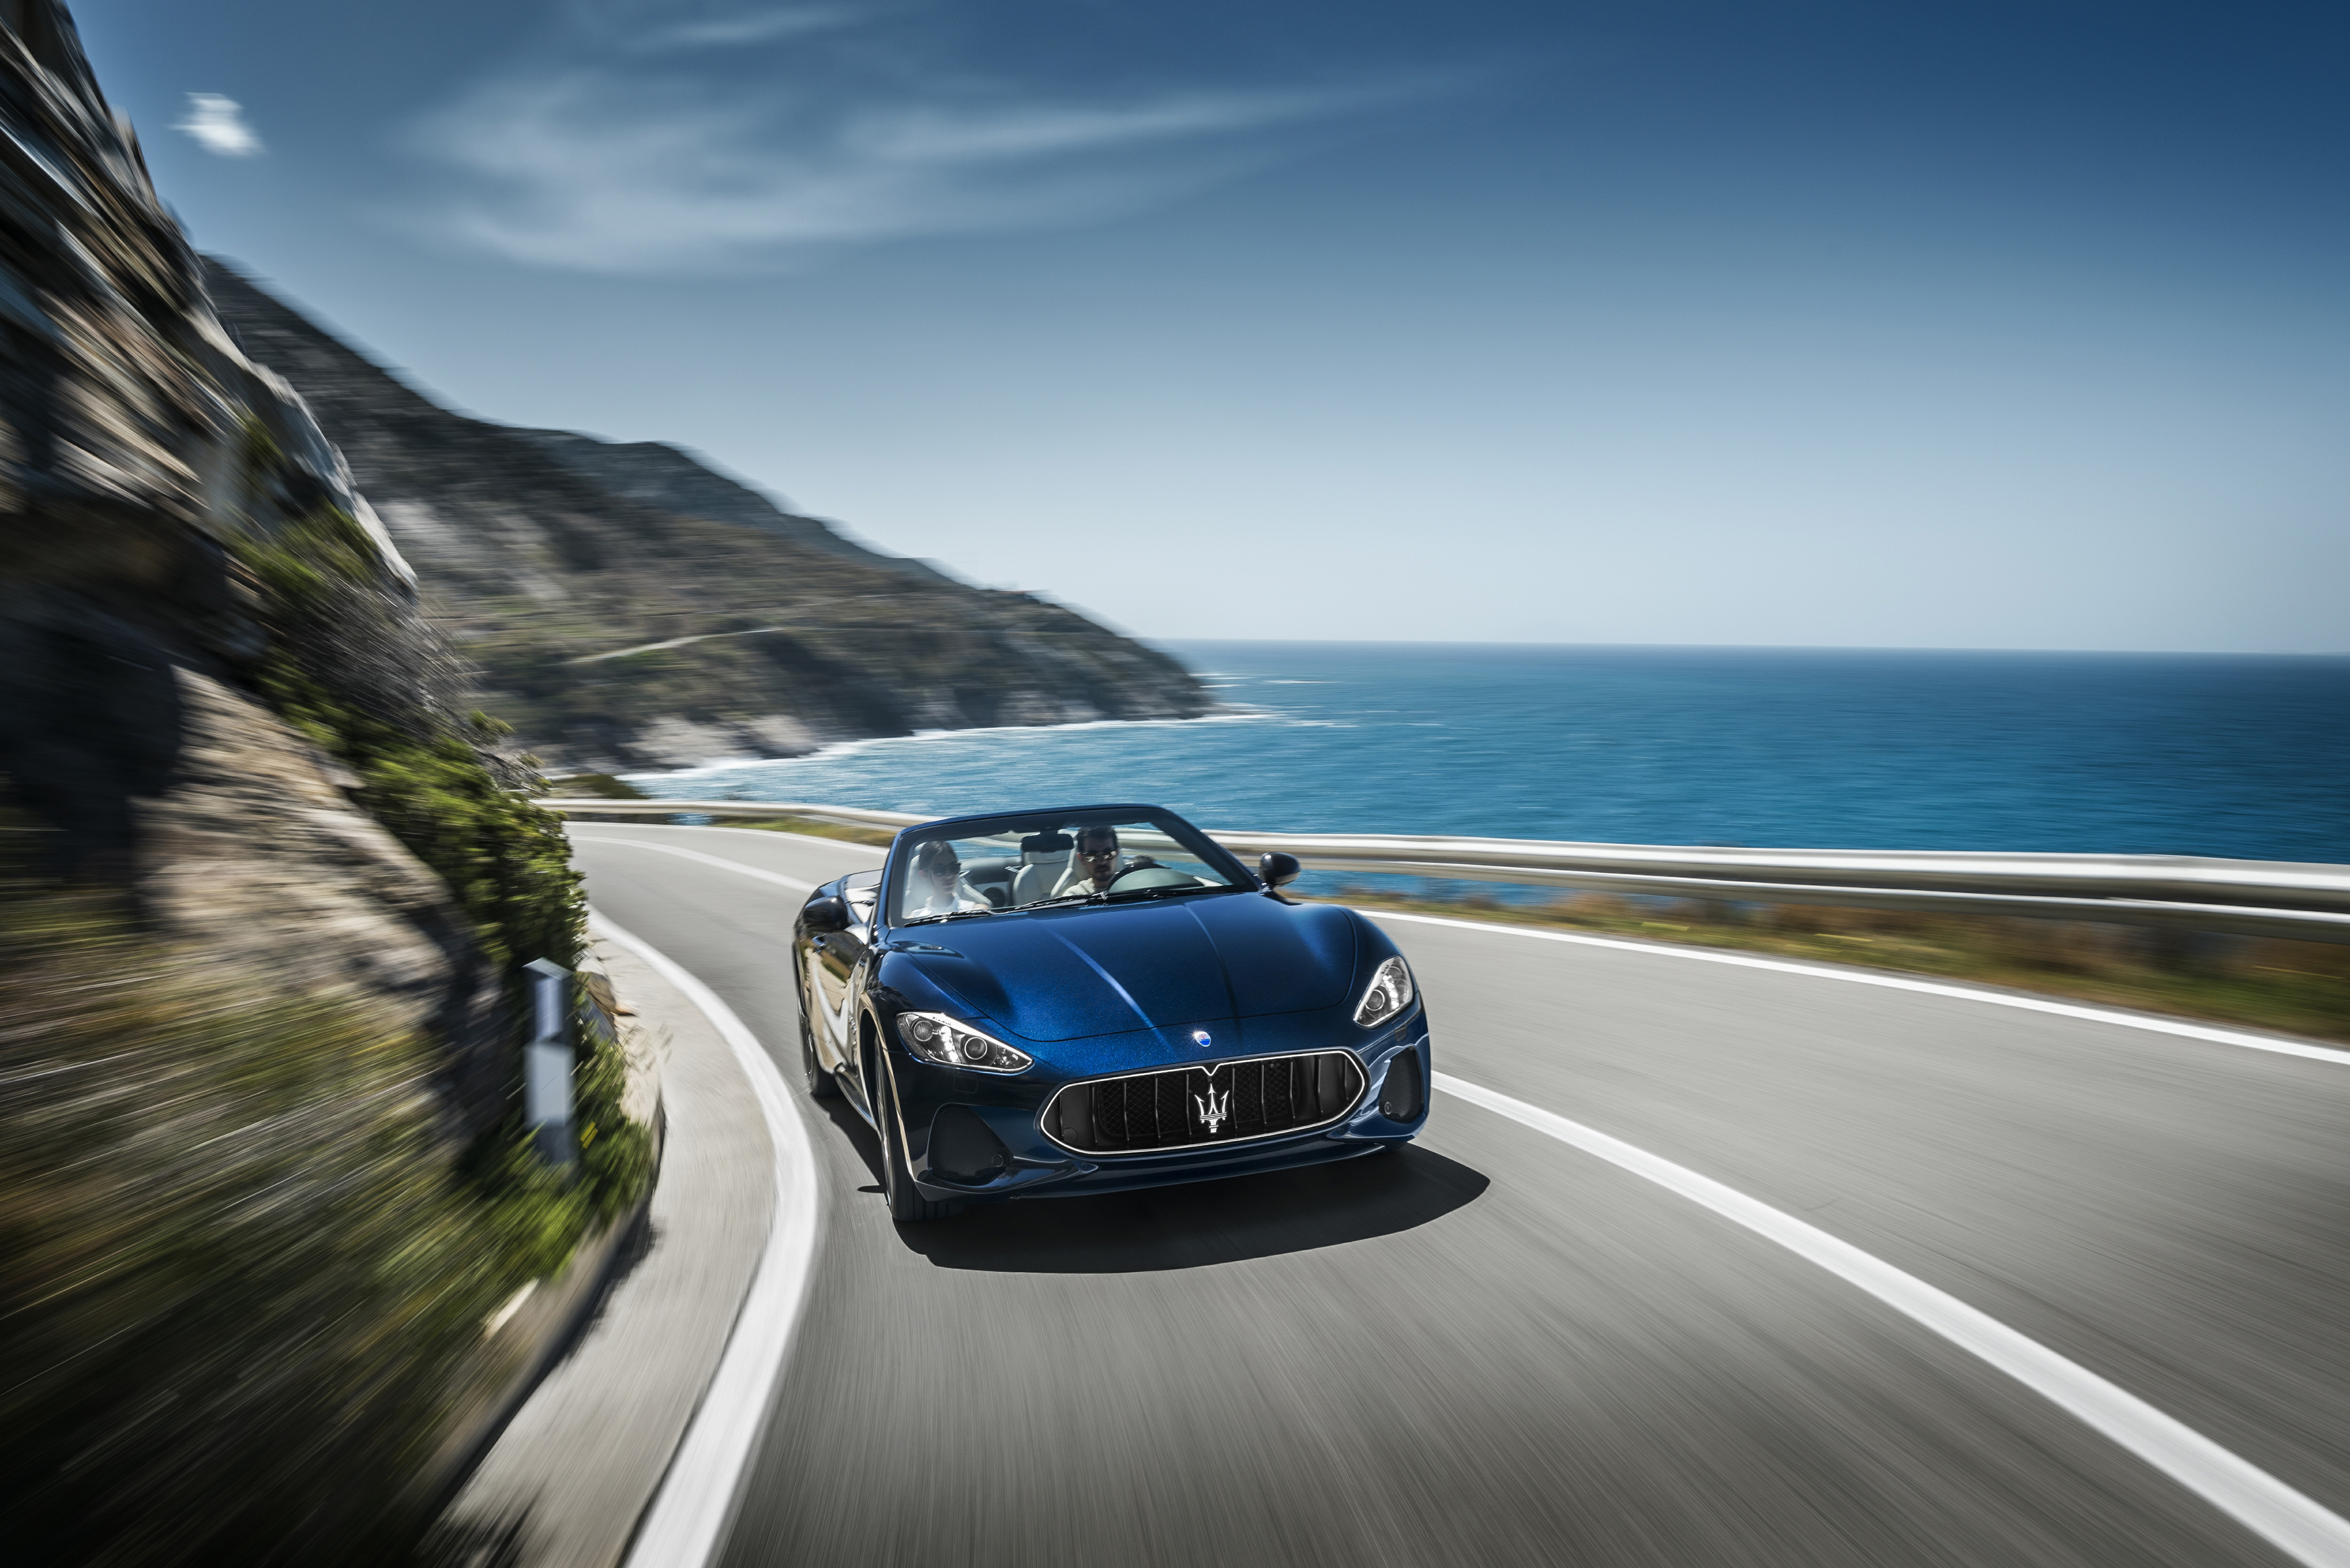 The Maserati Grancabrio drives against the backdrop of the sea